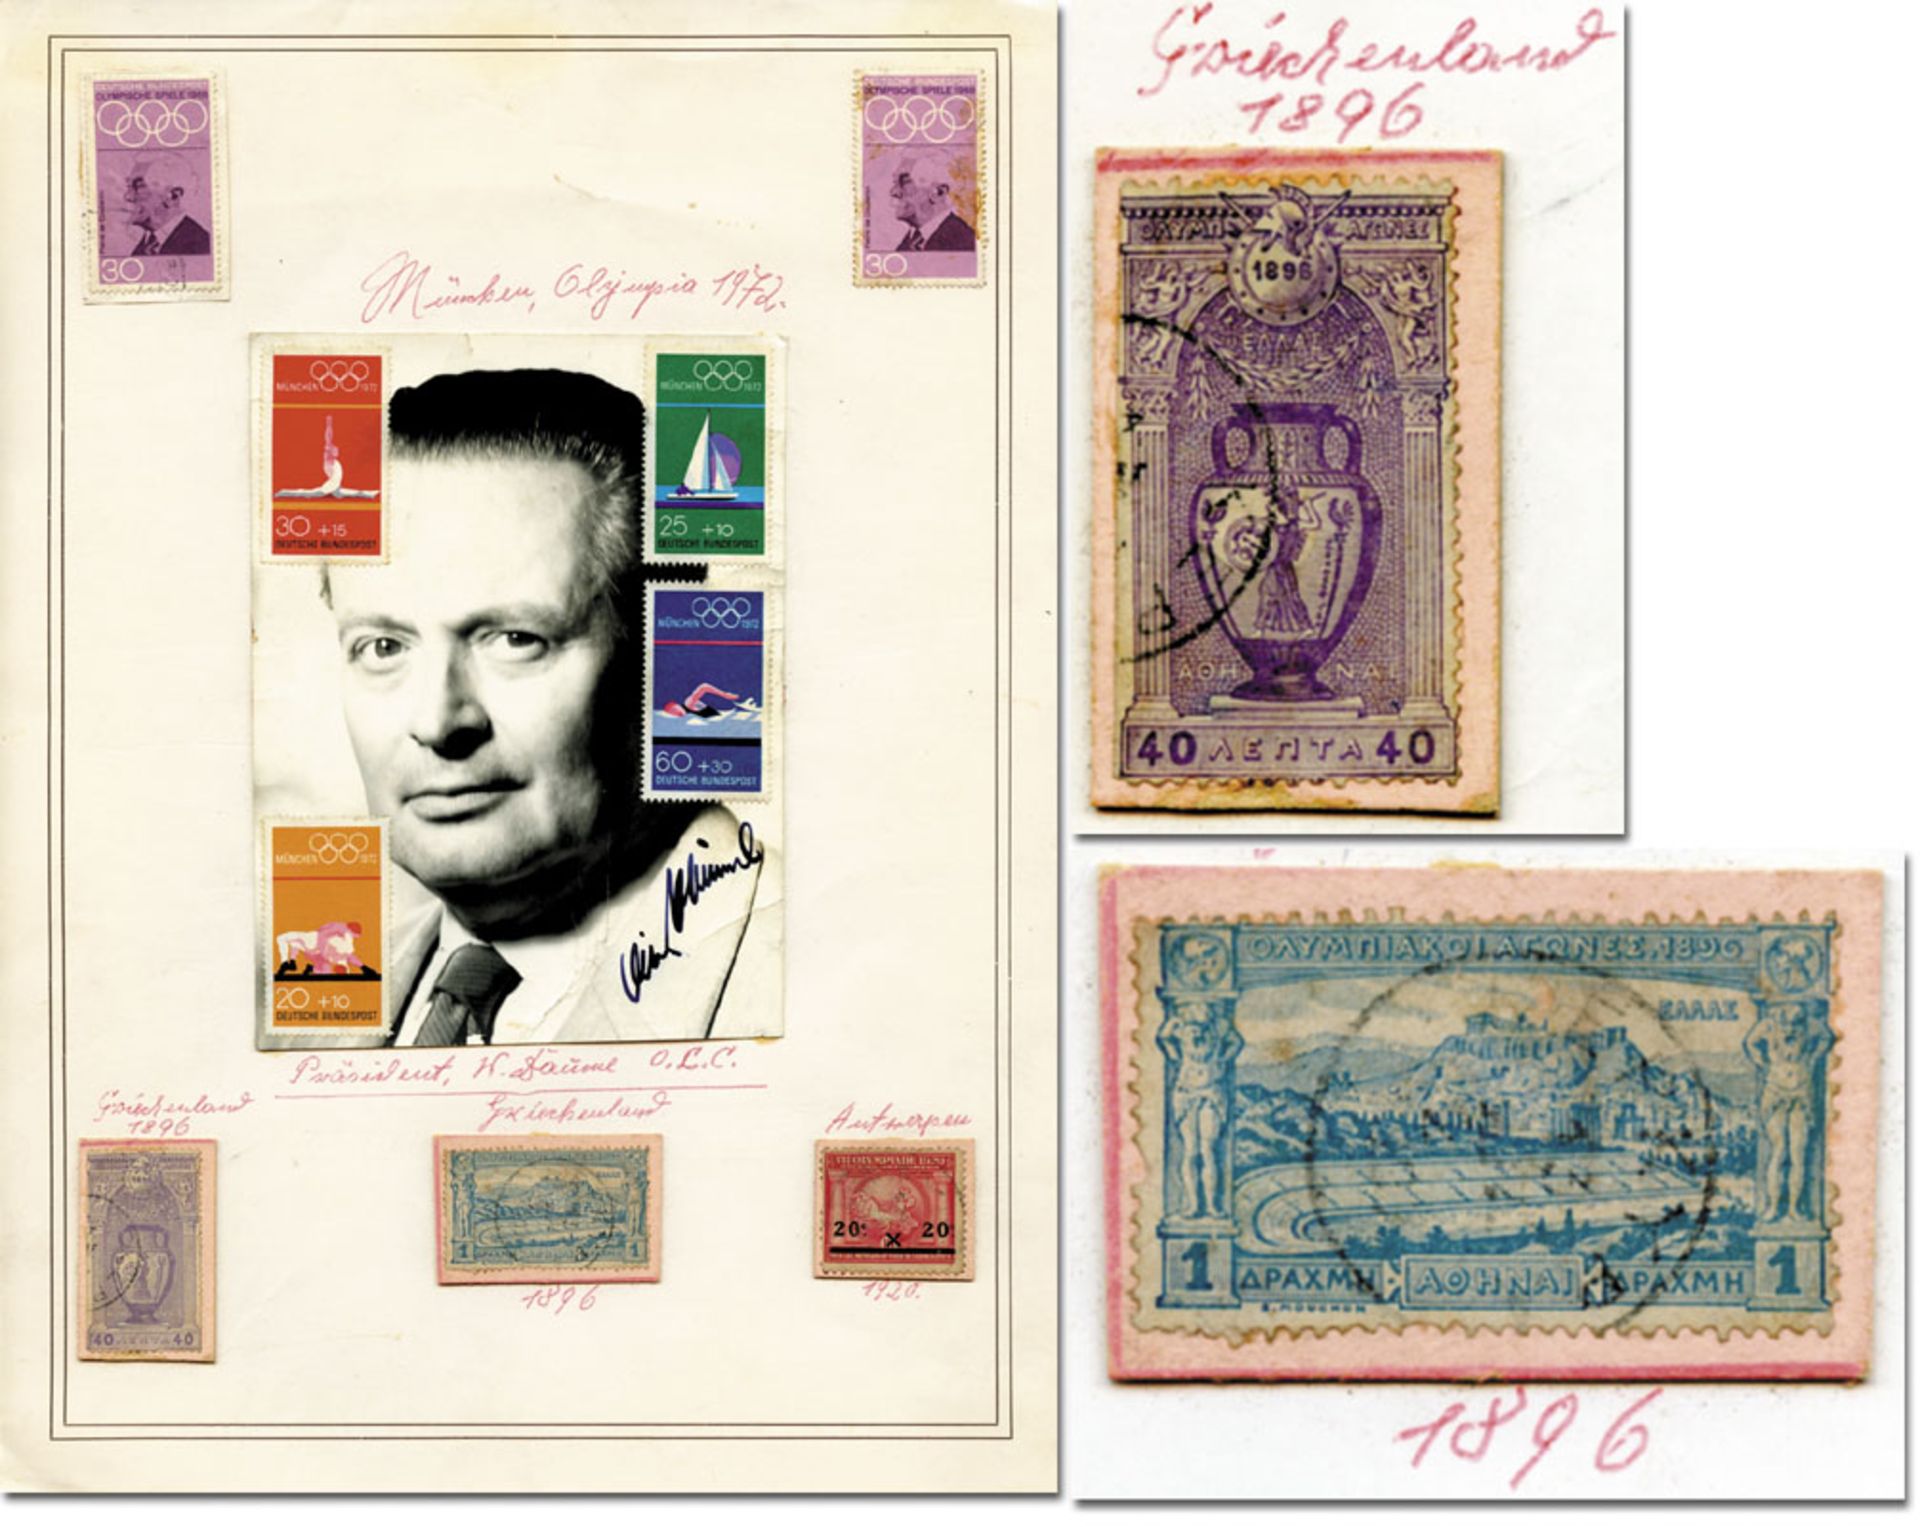 Philatelie OSS 1896-1972 - Sammelblatt mit 9 original Briefmarken von den Olympischen Spielen 1896, 